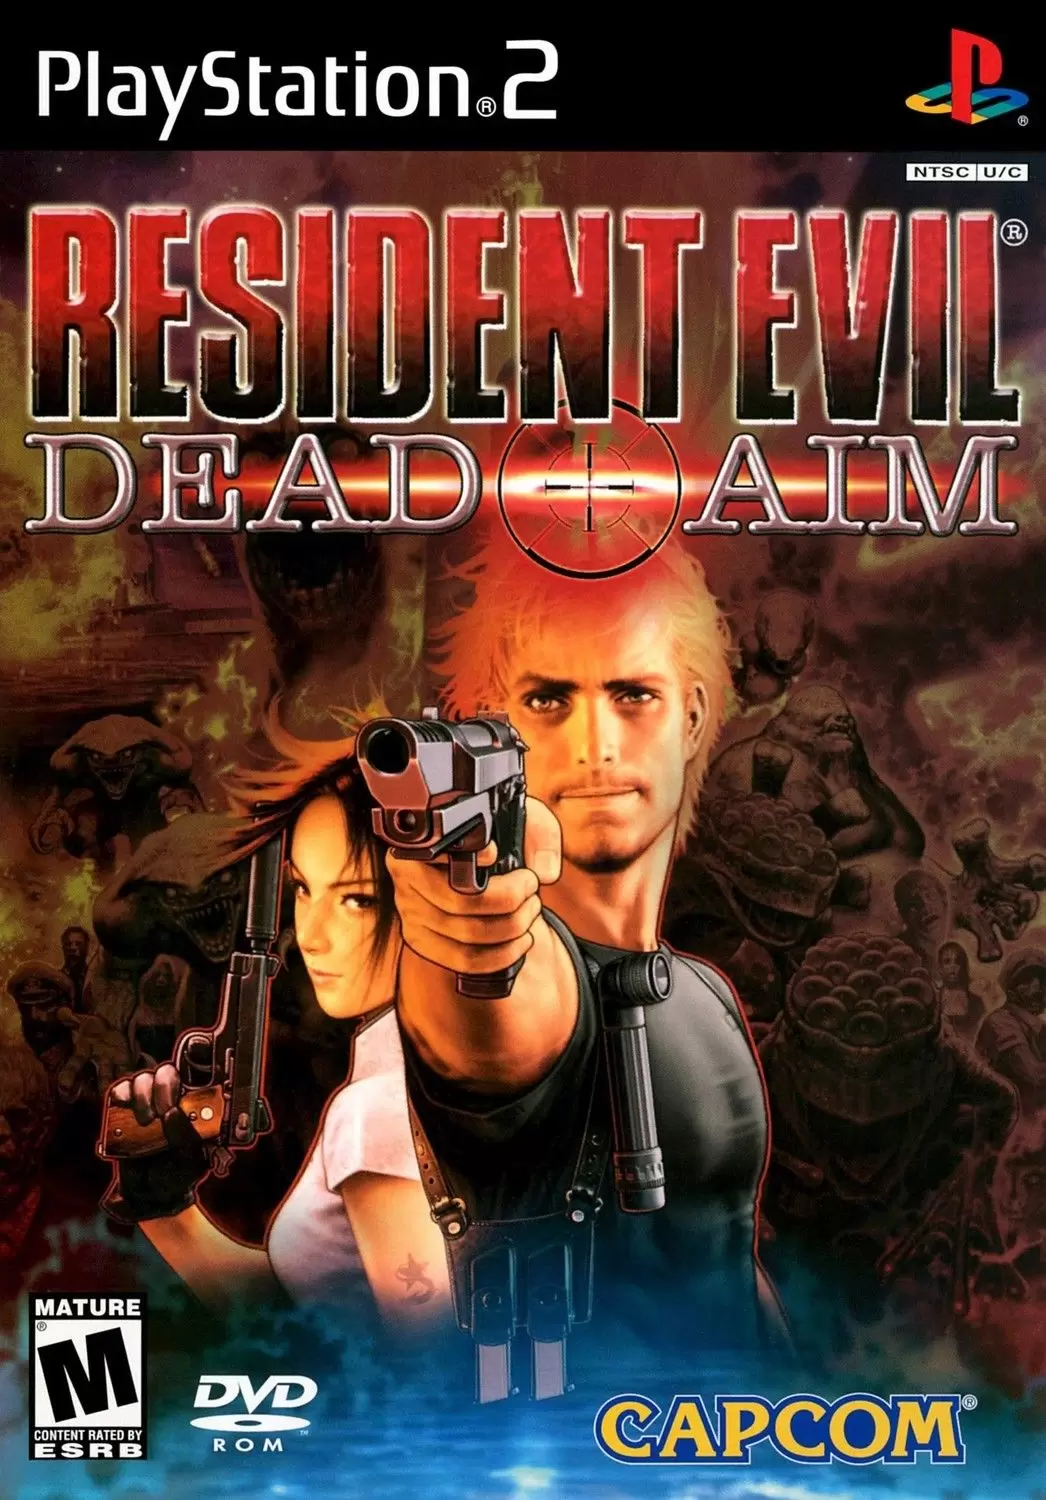 PS2 Games - Resident Evil: Dead Aim